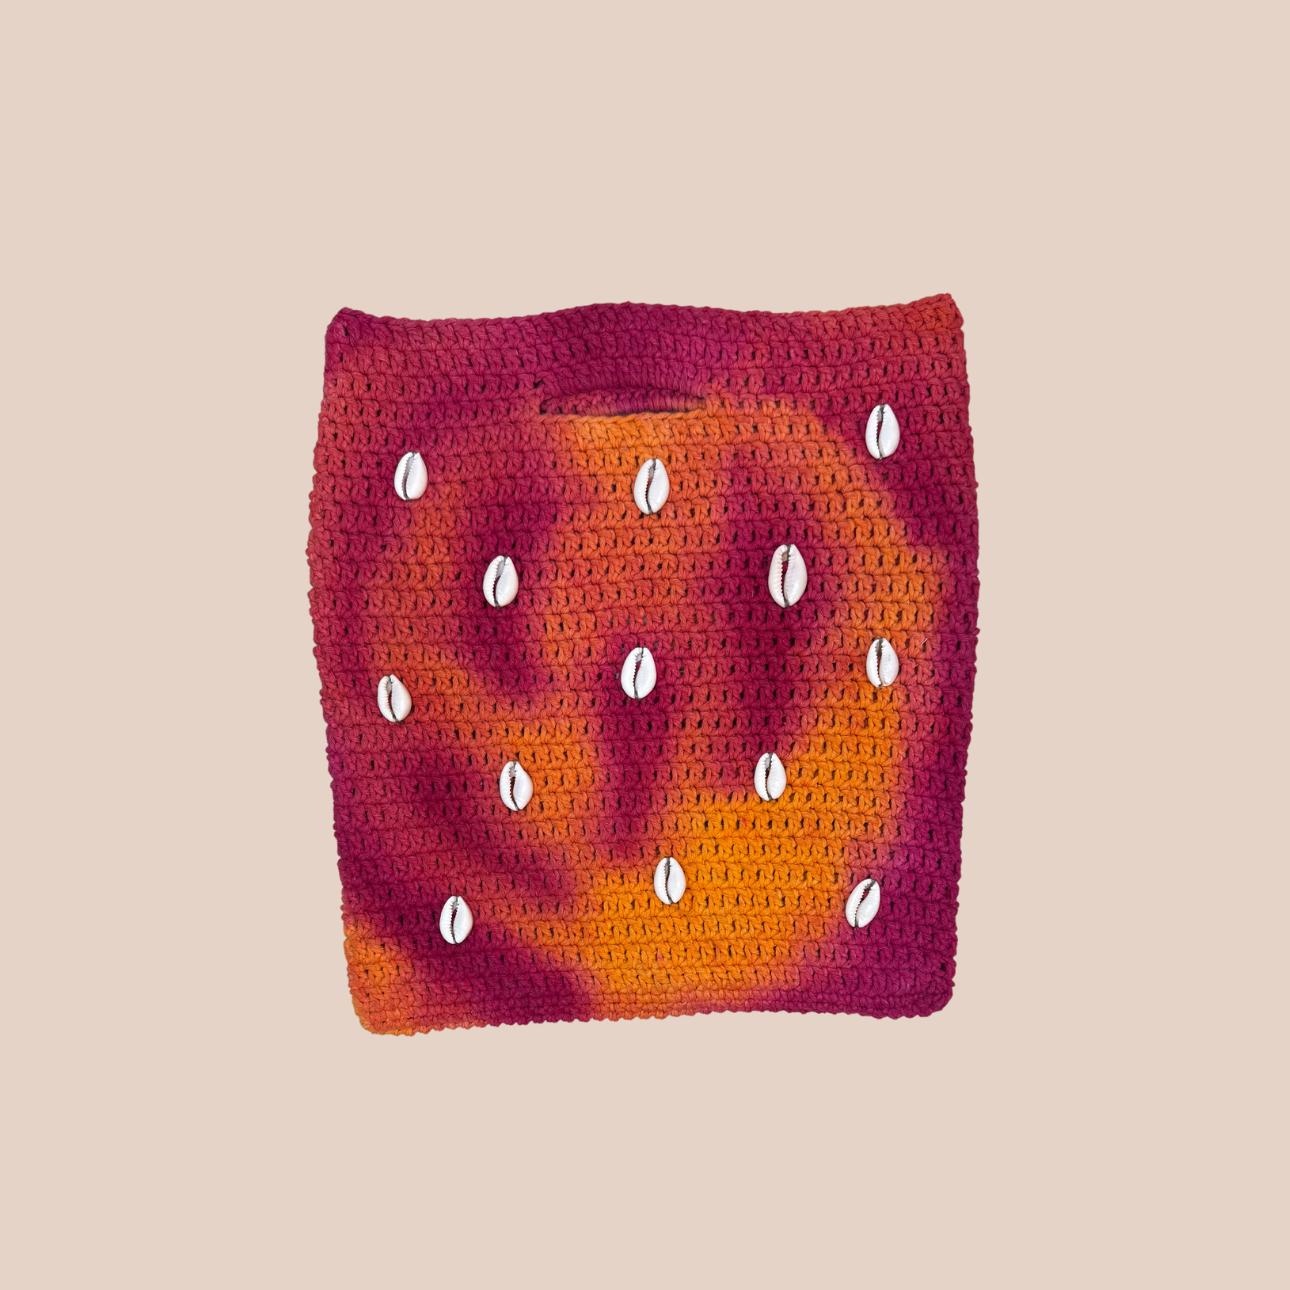  Image du sac CONCHA decoration coquillages cousues main de Maison Badigo, sac en laine crocheté multicolore unique et tendance